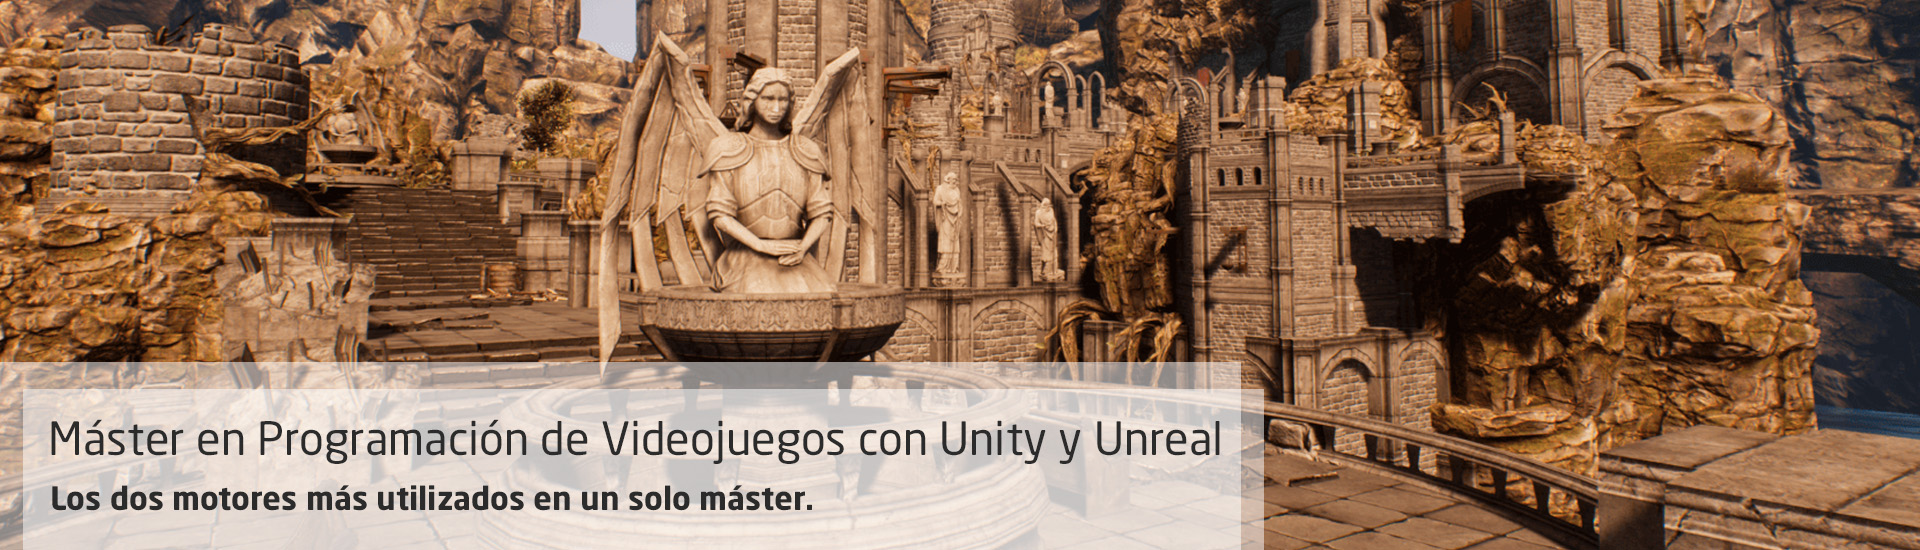 Máster en Programación de Videojuegos con Unity y Unreal. Dos motores en uno.